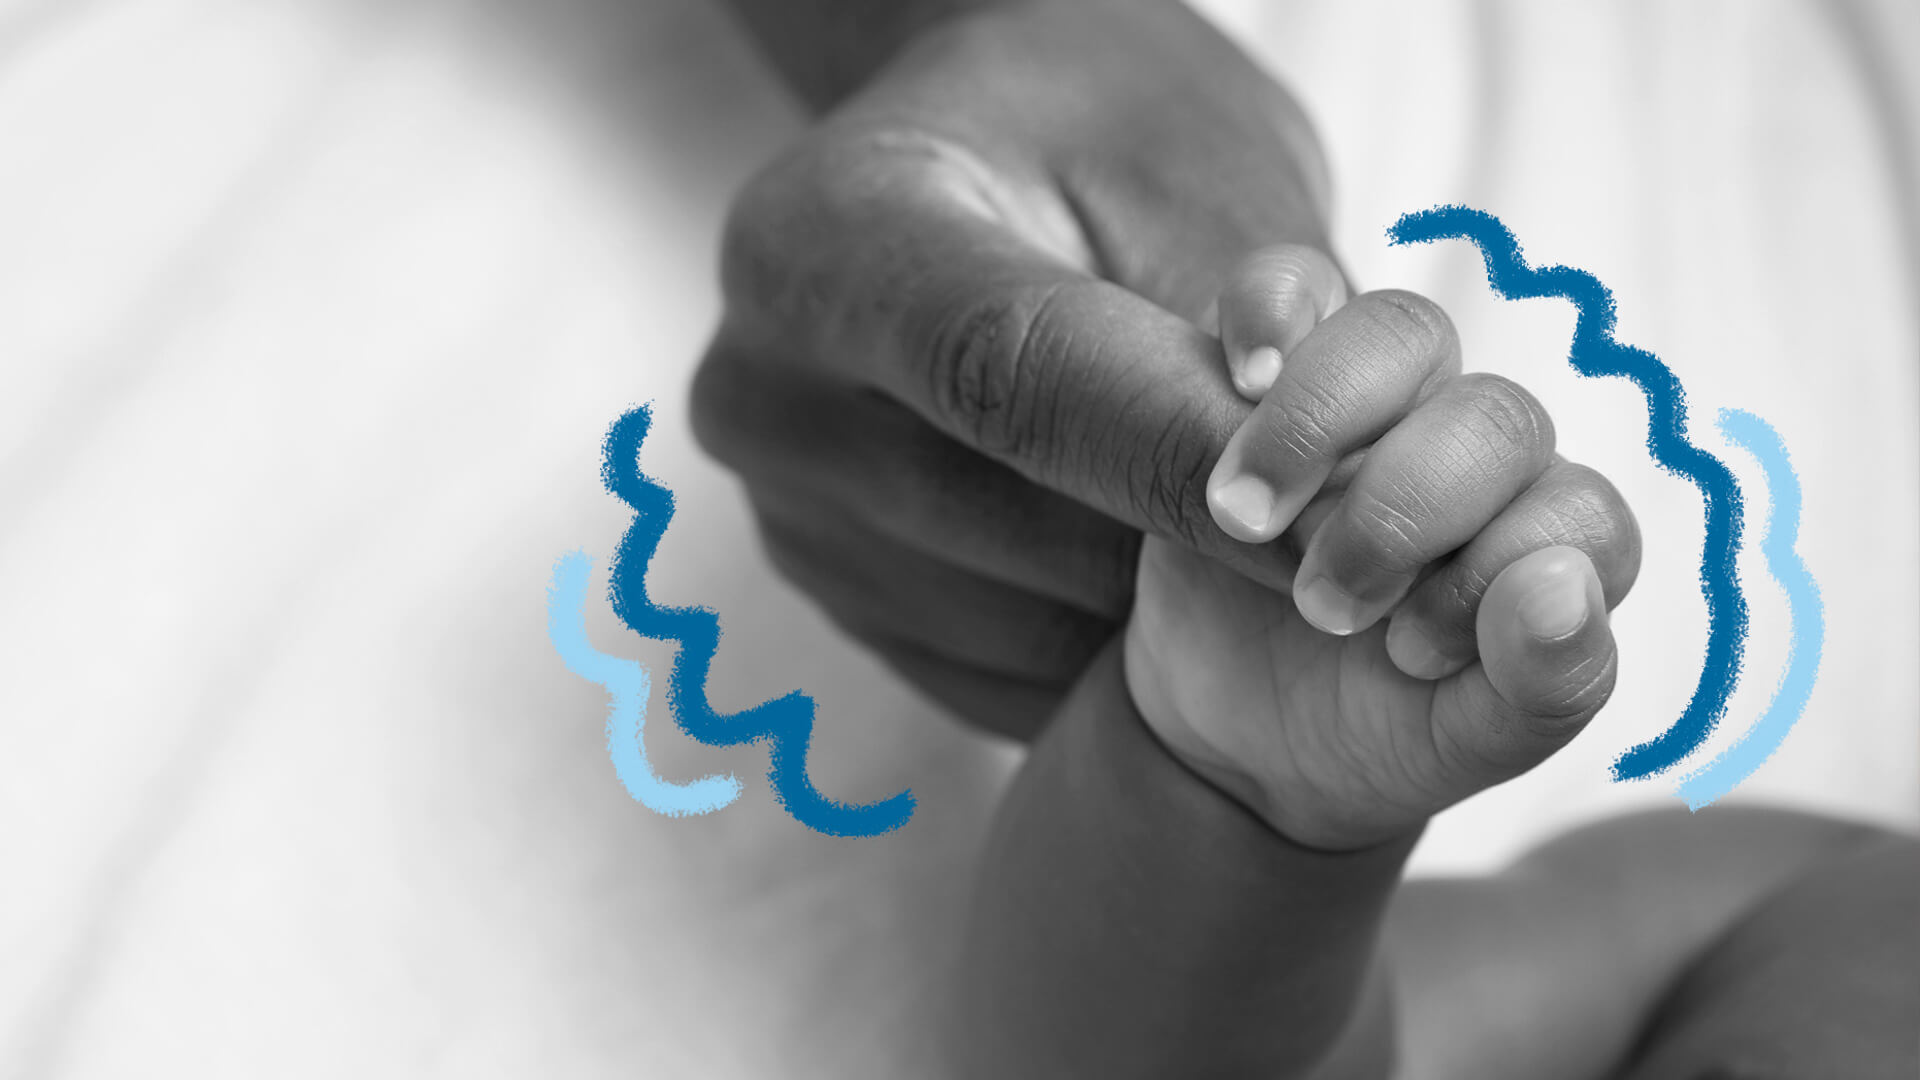 Imagem em preto e branco de uma mão de bebê segurando o dedo de um adulto.